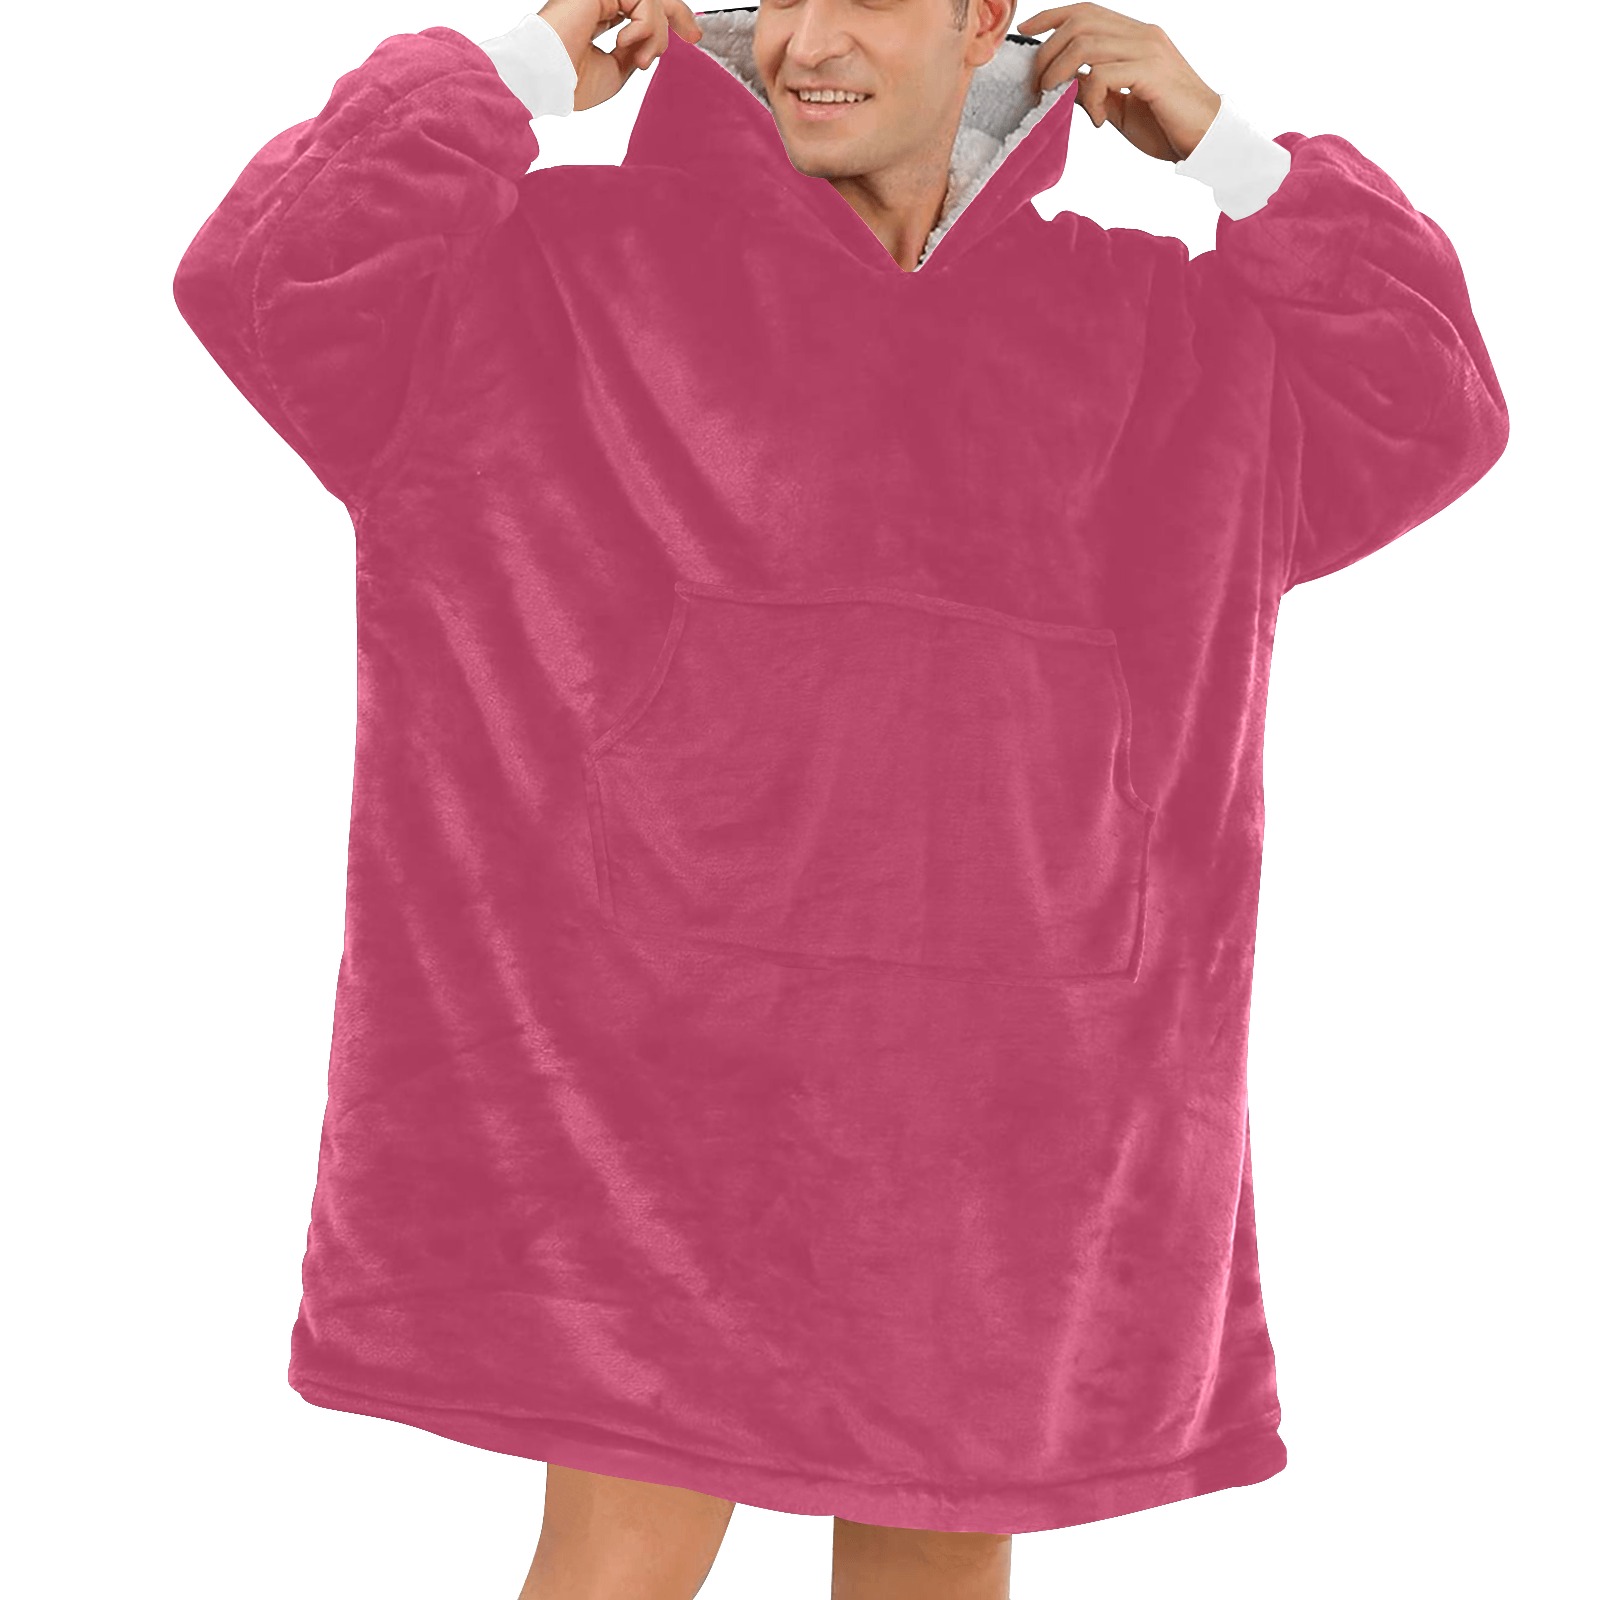 Innuendo Blanket Hoodie for Men